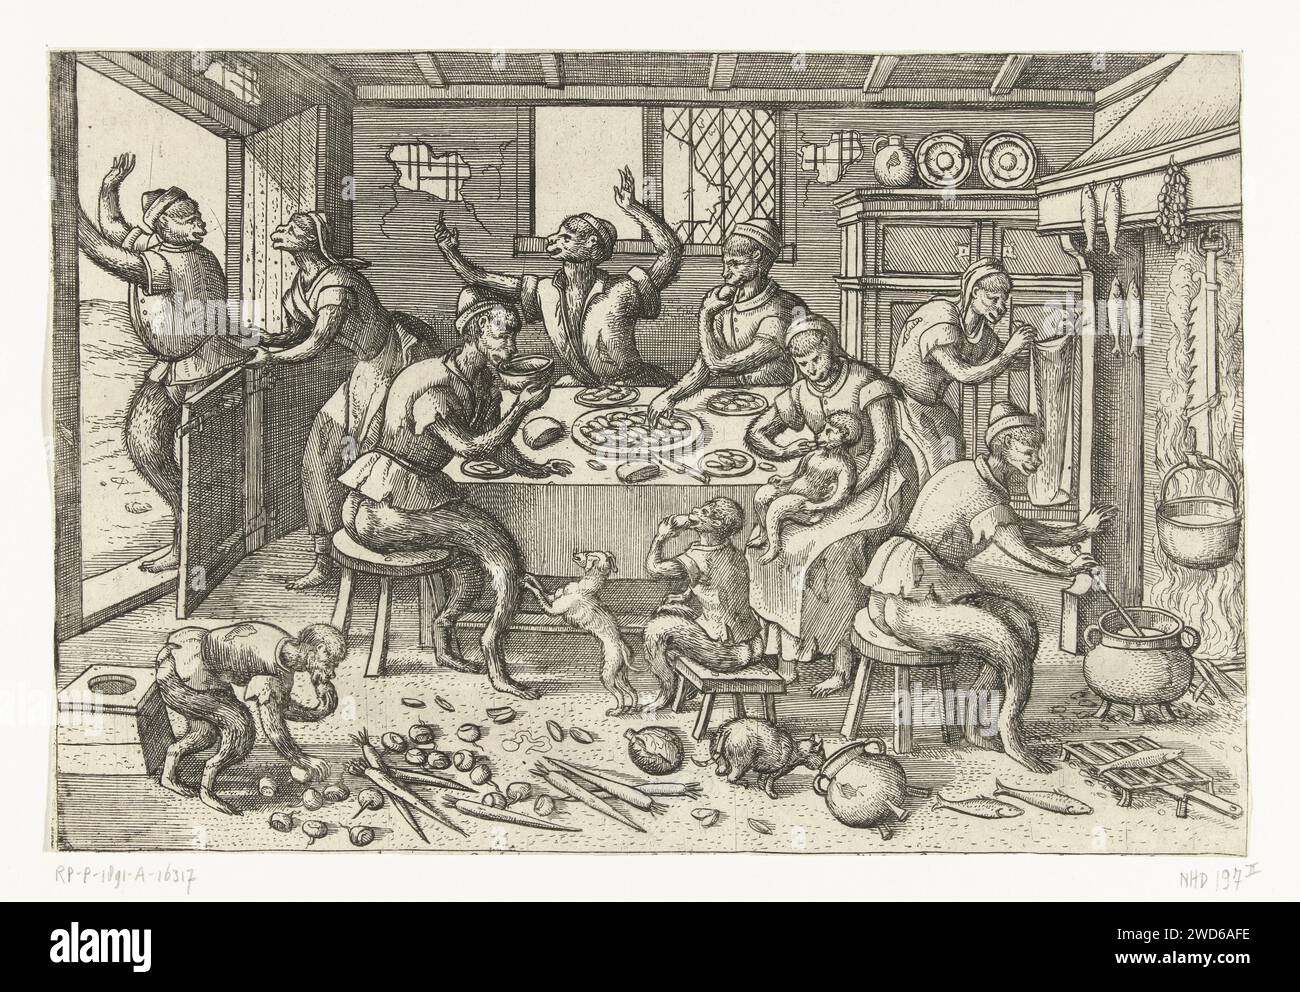 Lean Cuisine, Pieter van der Borcht (I), nach Pieter Bruegel (I), nach Pieter van der Heyden, 1563 - 1608 drucken Eine Küchenszene aus dem 16. Jahrhundert. Es gibt ein paar magere Affen um einen Tisch in einem baufälligen Haus. Sie greifen aus einer Schüssel Muscheln. Man trinkt eine Schüssel mit Suppe. Auf dem Boden verteilt sind Karotten, Rüben und Kohl, Gemüse für die Arme. Fisch wird über dem Kamin geraucht, auch schlechtes Essen. Ein großer Affe hat ihn besucht, versucht aber jetzt wieder davon zu kommen. Die armen Affen wollen ihn aufhalten. Antwerpen (möglicherweise) Papierätzung Küche-Innenraum. "mundus inversus", die umgekehrte Welt Stockfoto